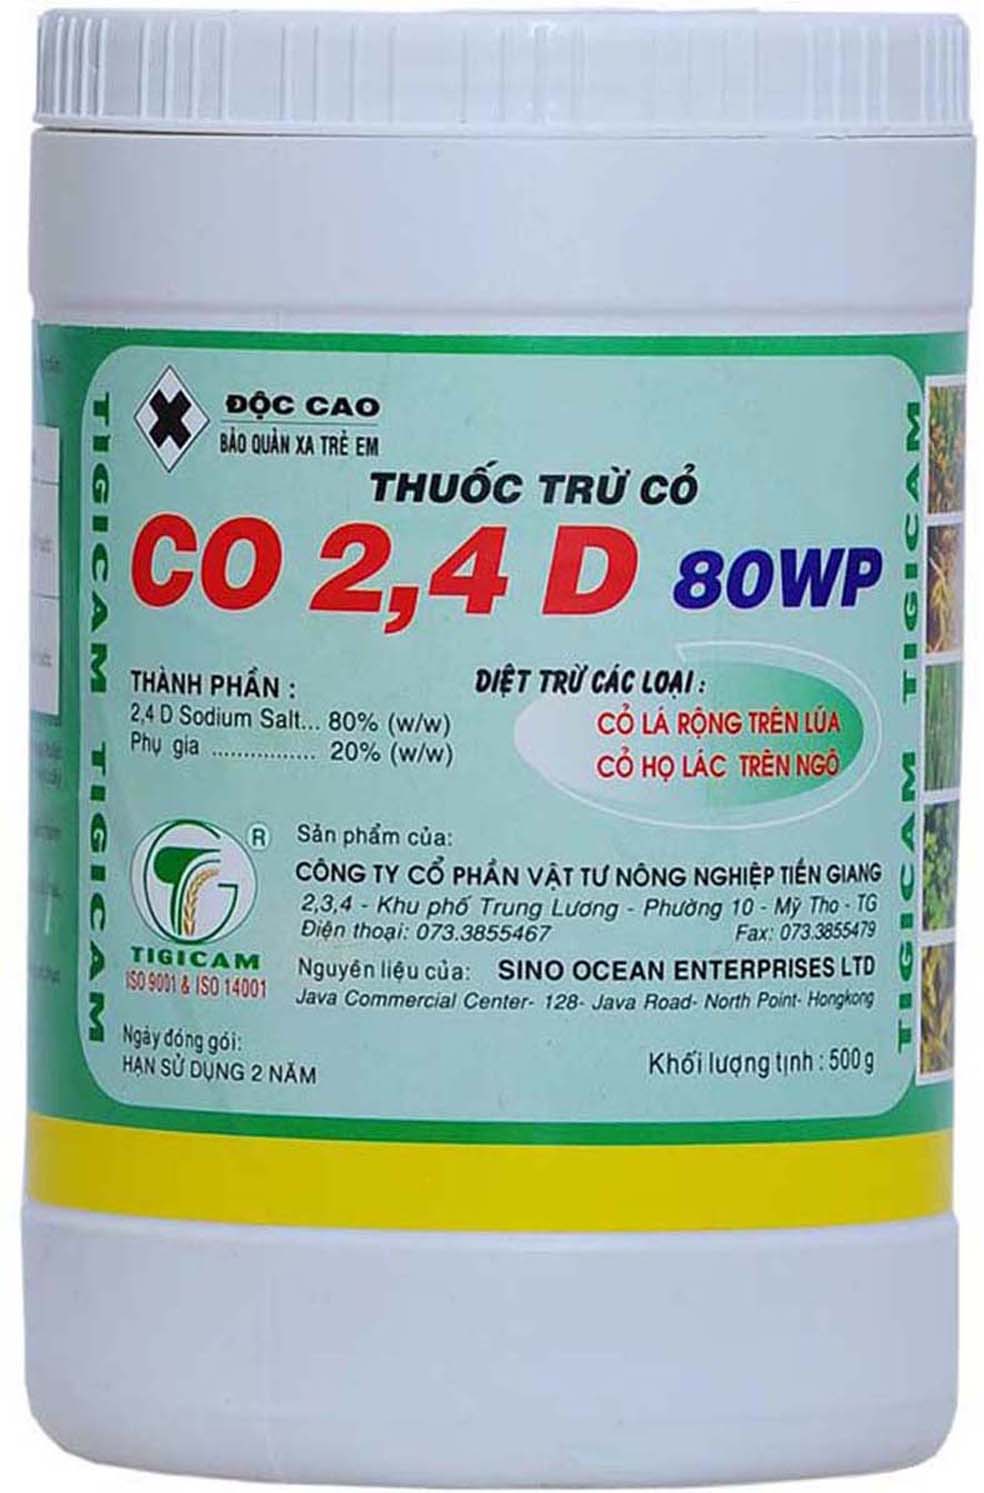 CO 24D 80WP- 500g - Thuốc Trừ Sâu Tigicam - Công Ty Cổ Phần Vật Tư Nông Nghiệp Tiền Giang